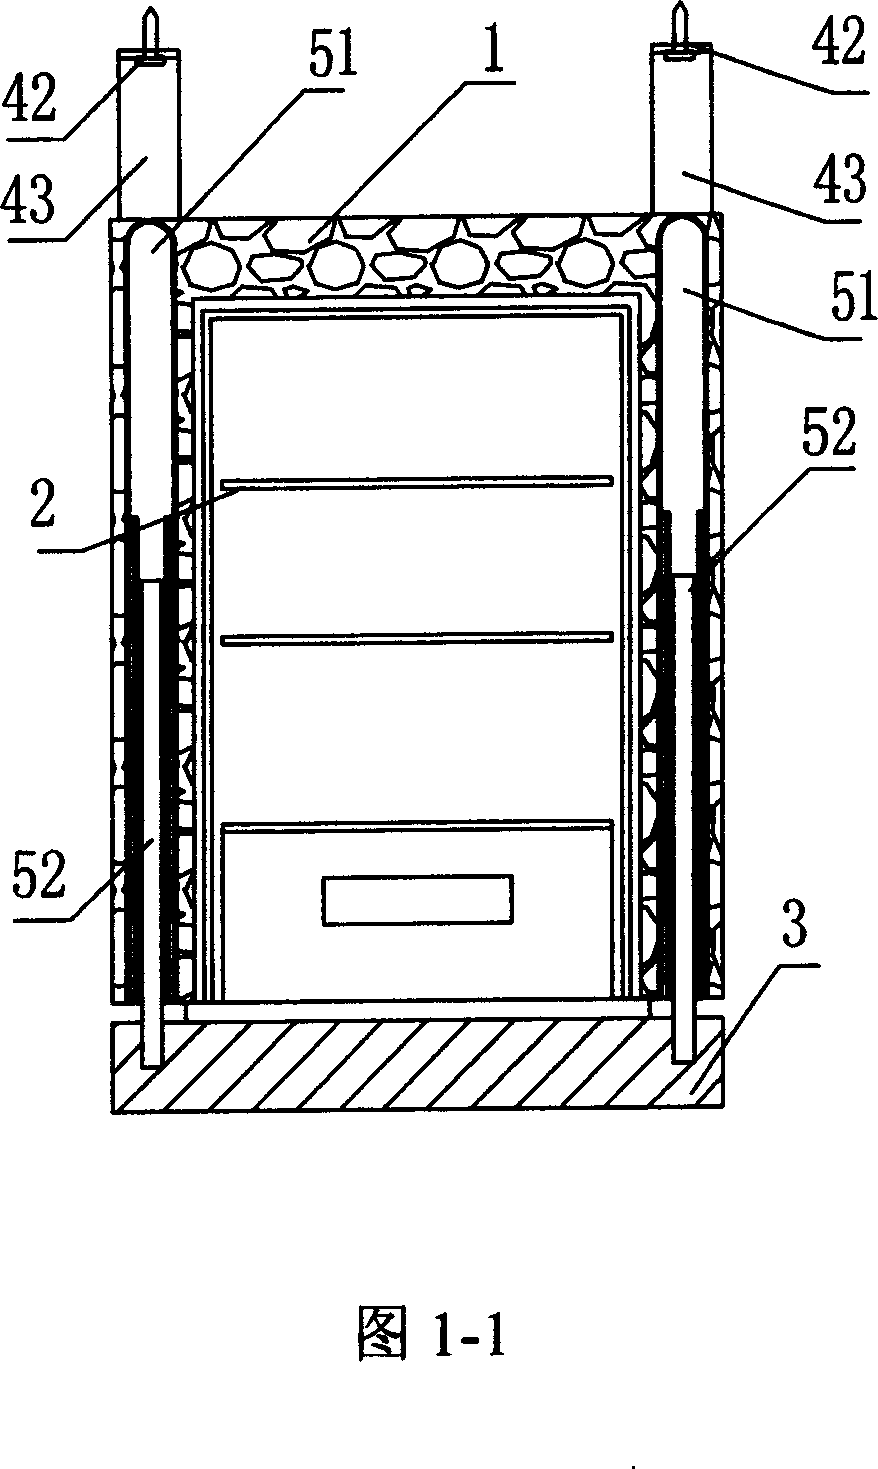 Suspended refrigerator with bottom door